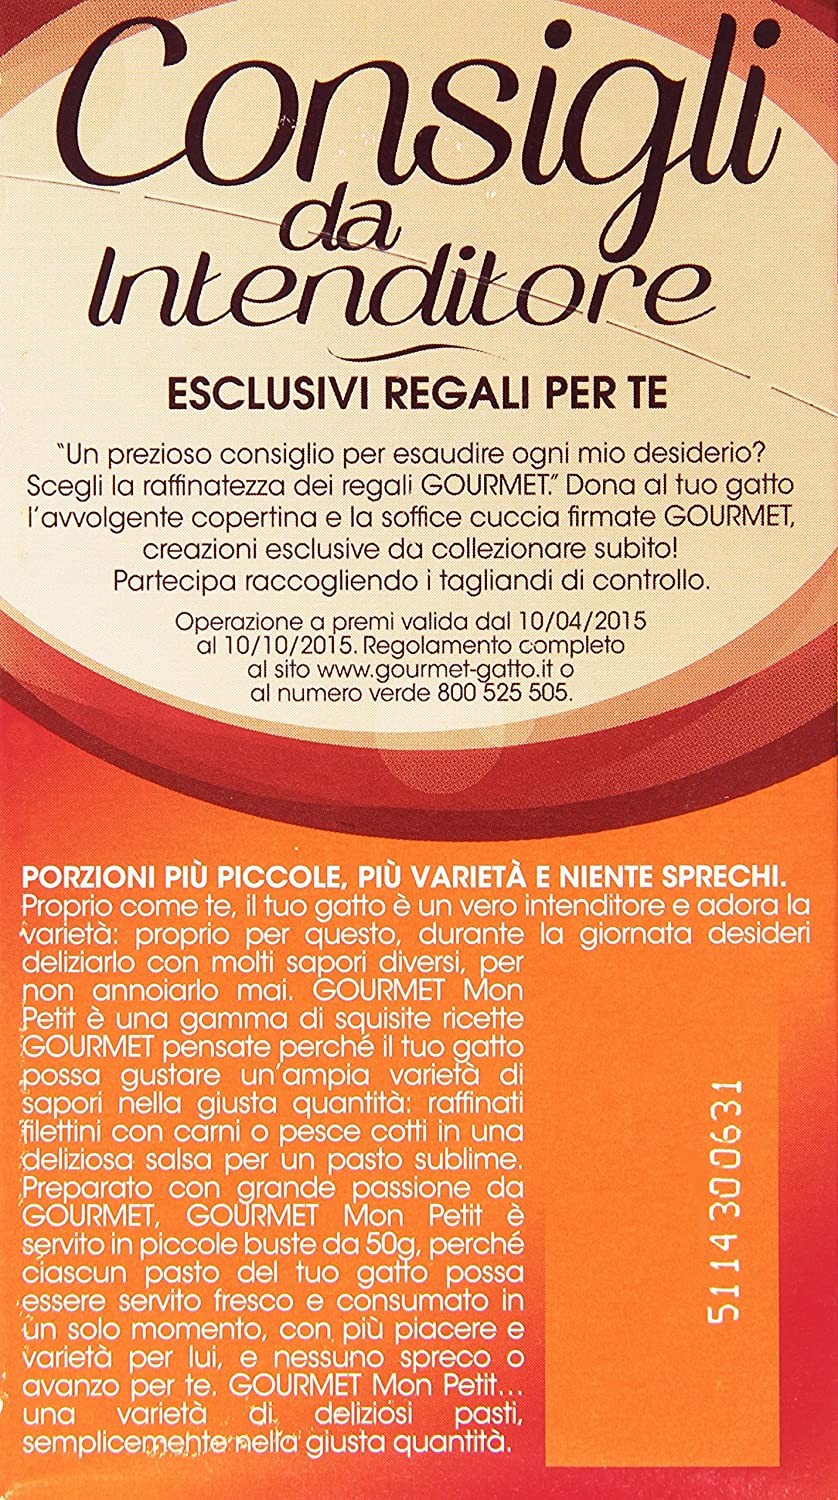 Gourmet Mon Petit, Selezione Prelibata con Carni per Gatti, 6 x 50g